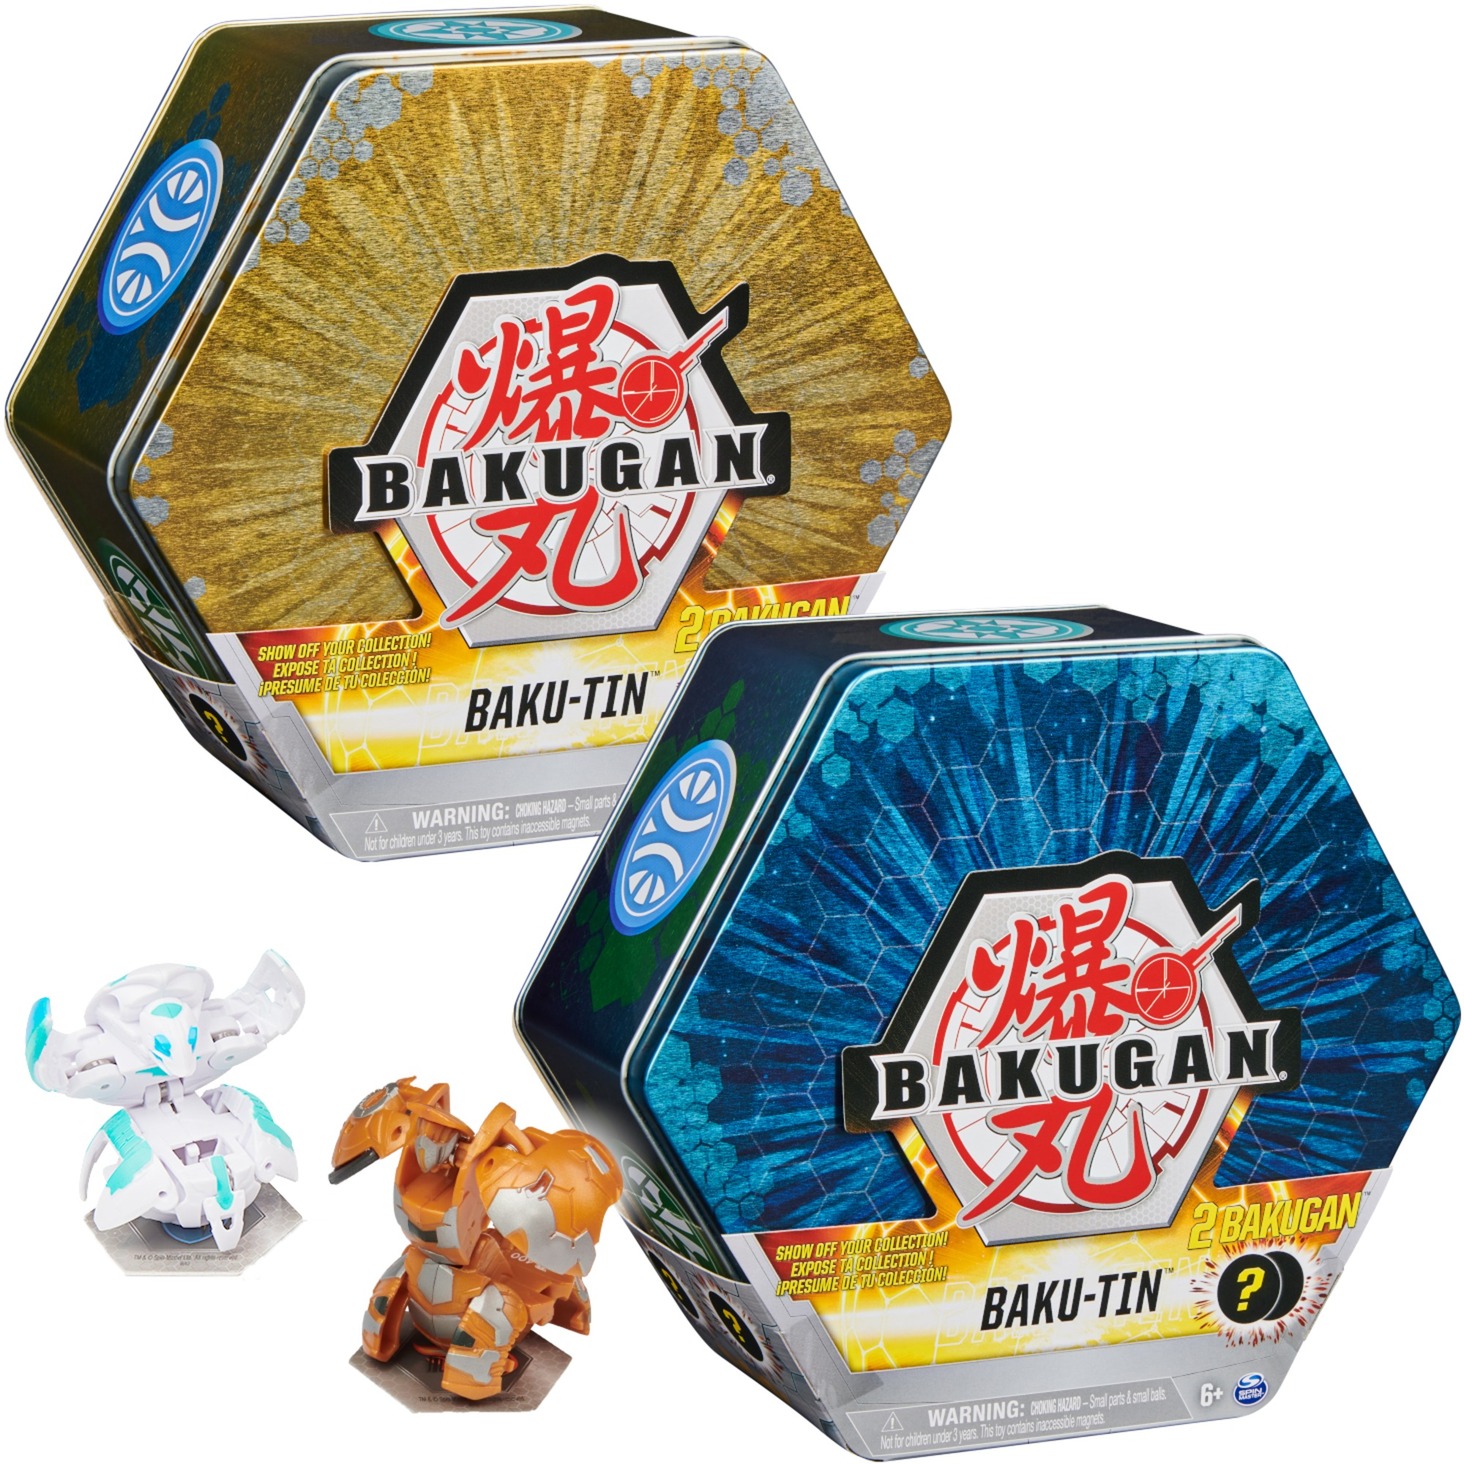 Image of Alternate - Bakugan Baku-Tin, Spielfigur online einkaufen bei Alternate